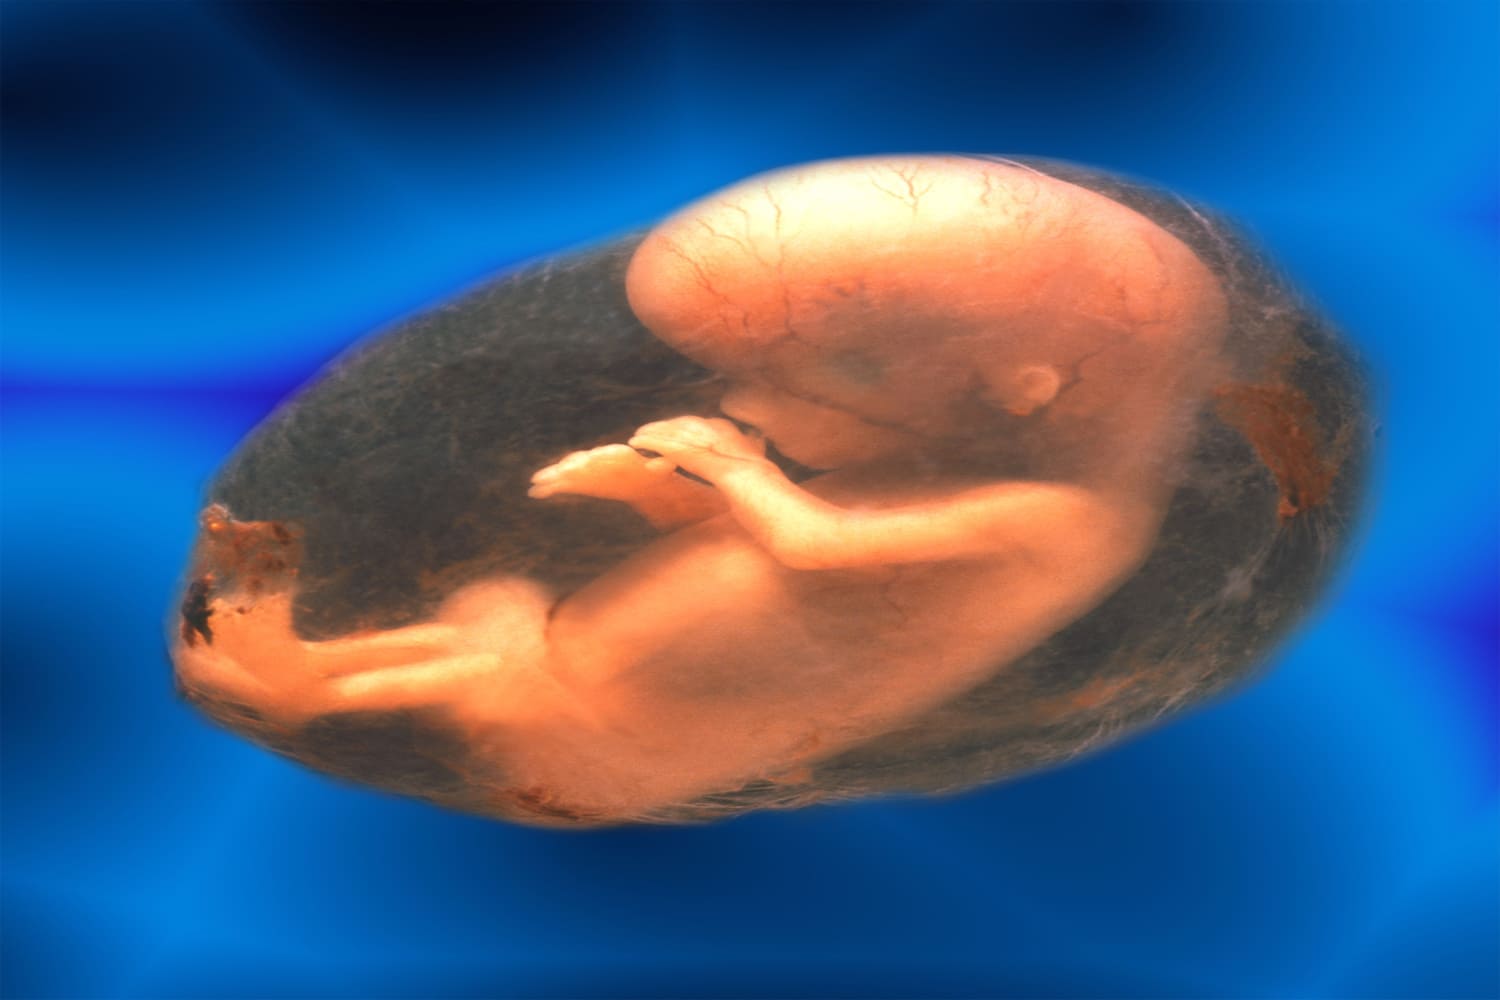 fetus in amniotic sac